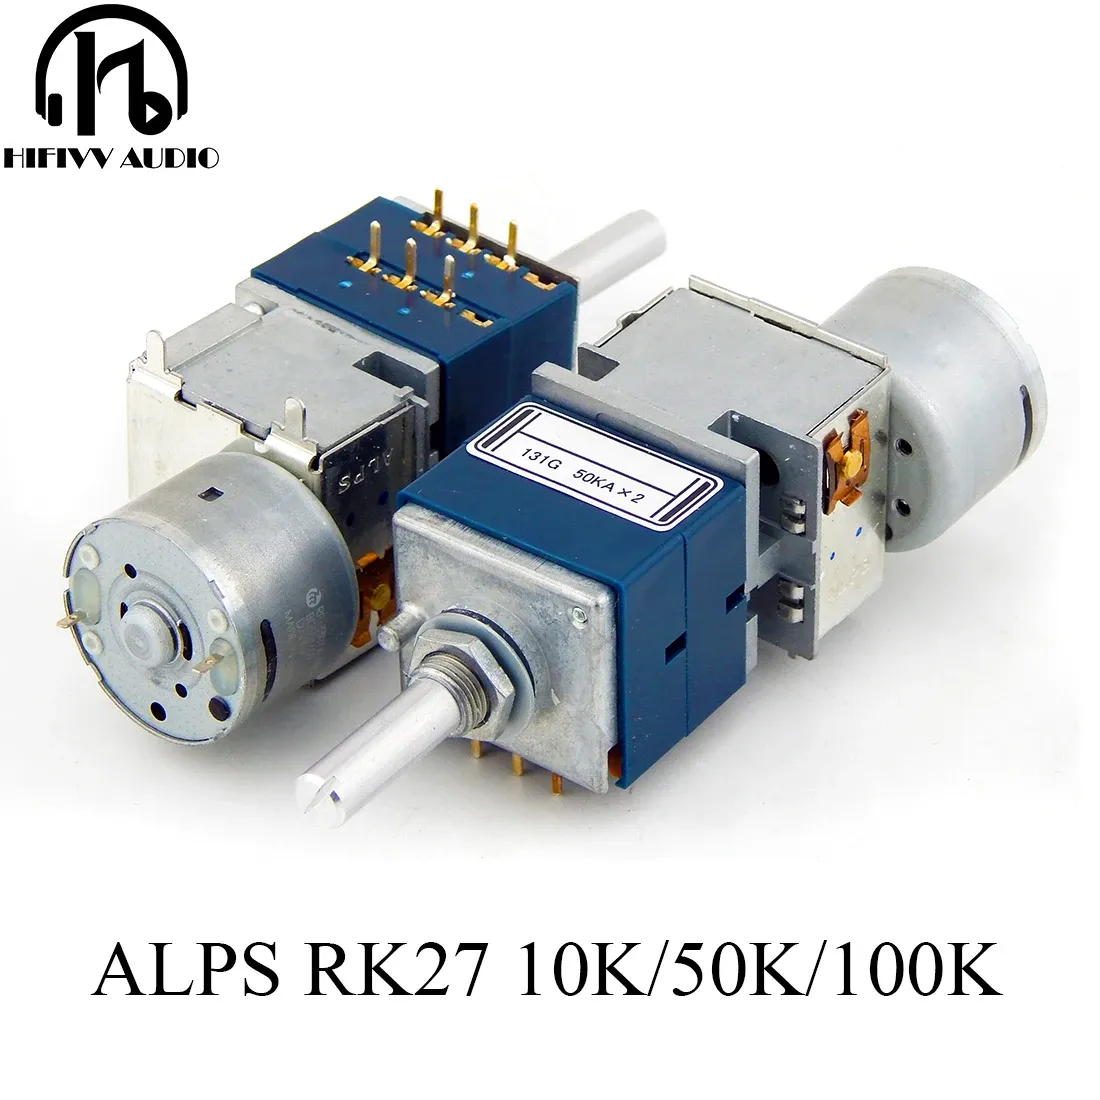 アンプオリジナルの日本アルプスRK27タイプモーターポテンショメータボリュームスイッチ用ハイステレオオーディオアンプDIYキット10K 50K 100K